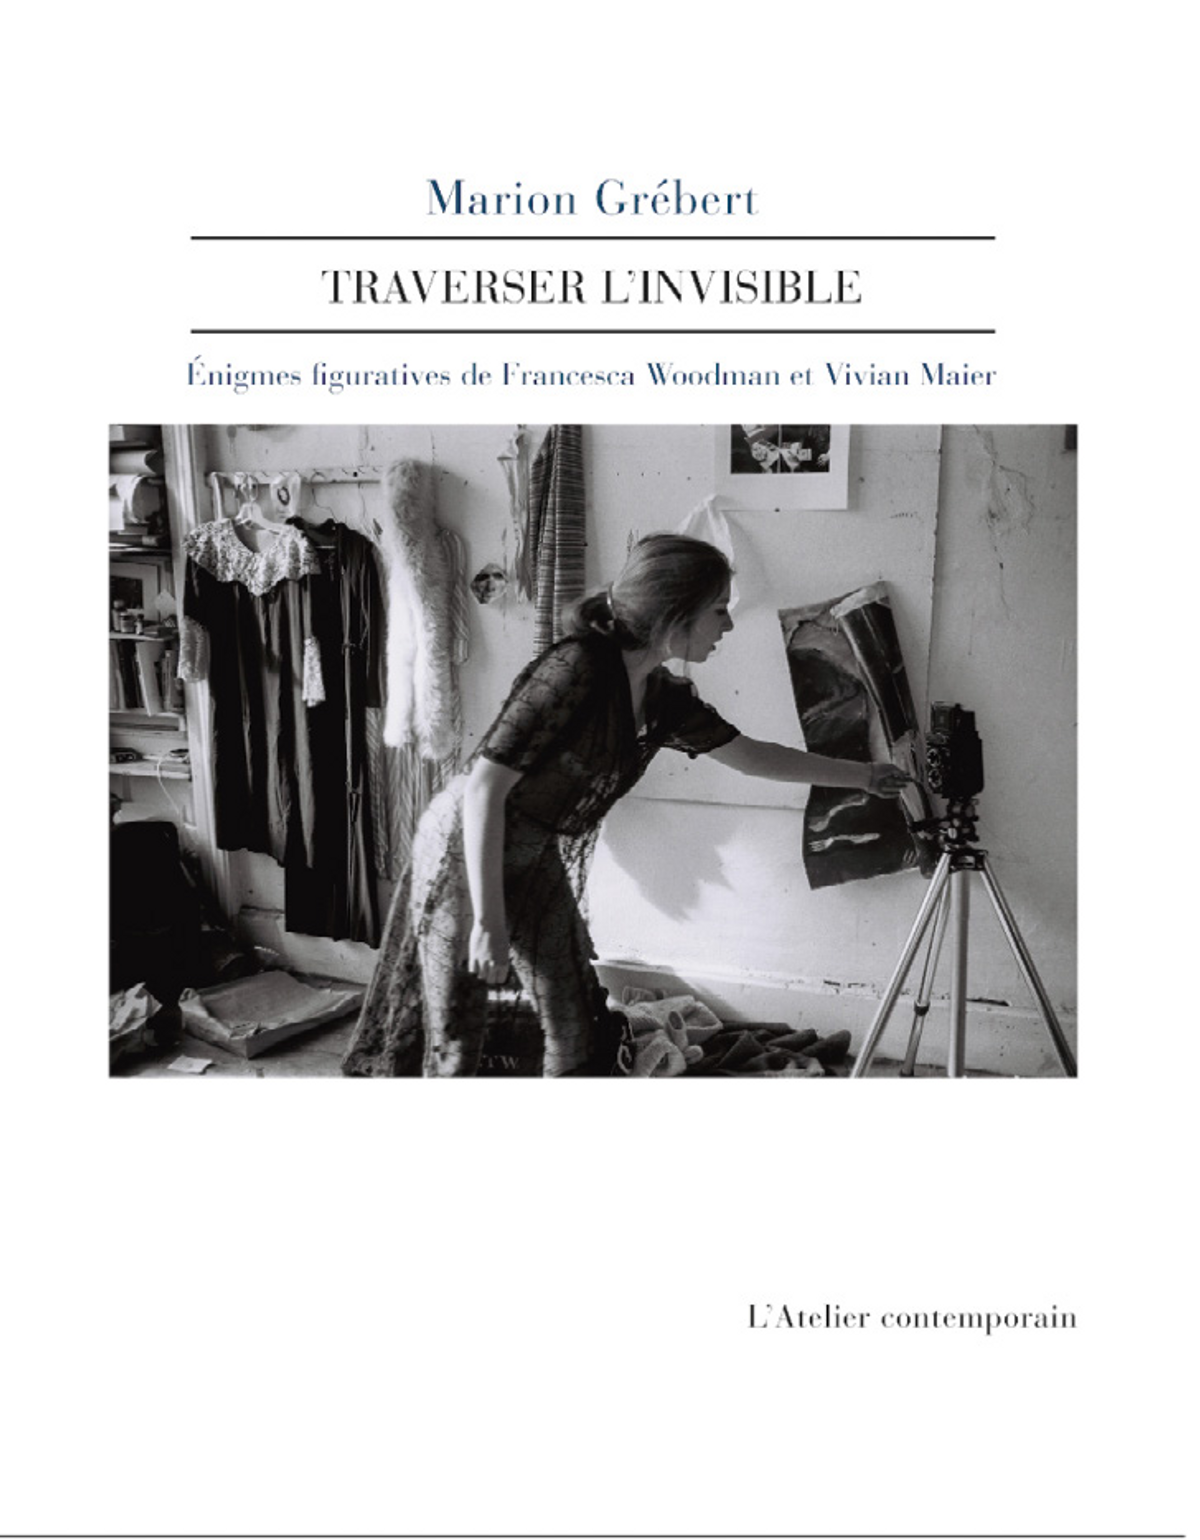 Marion Grébert, Traverser l’invisible, Strasbourg, L’Atelier contemporain, 2022, 256 pages, 25 euros.